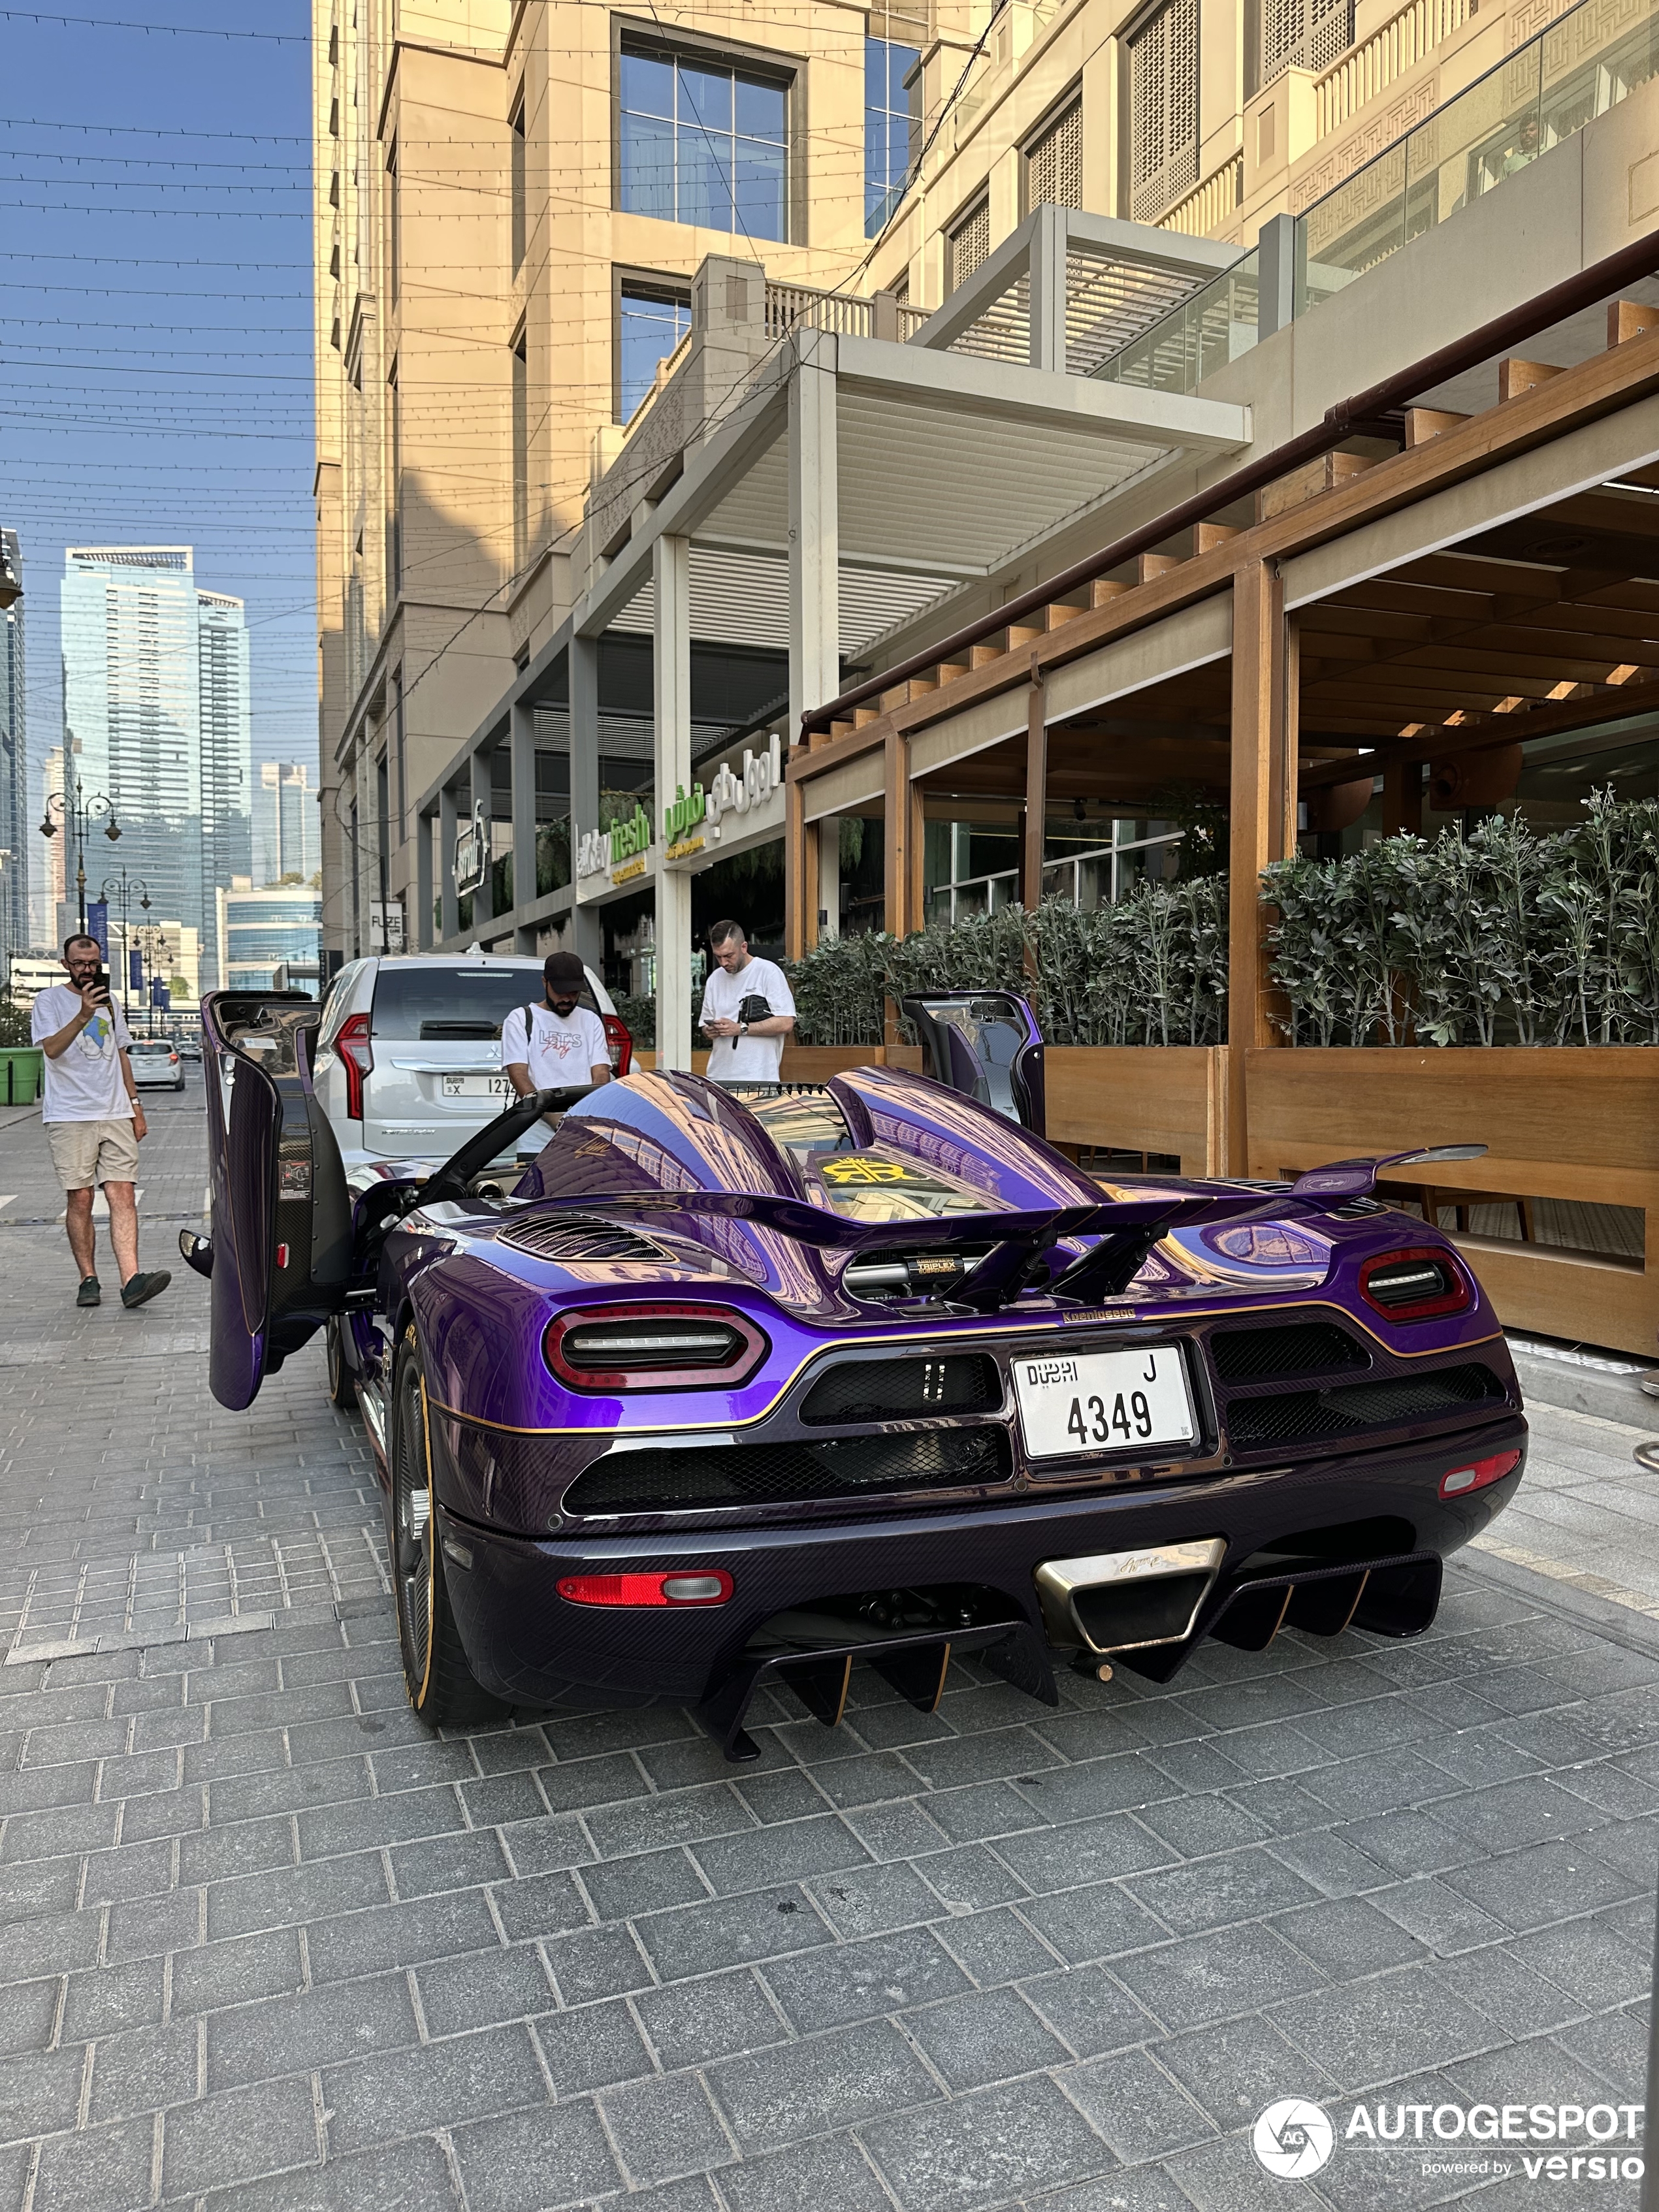 Pojavljuje se još jedan ljubičasti hiperautomobil, ovog puta u Dubaiju.